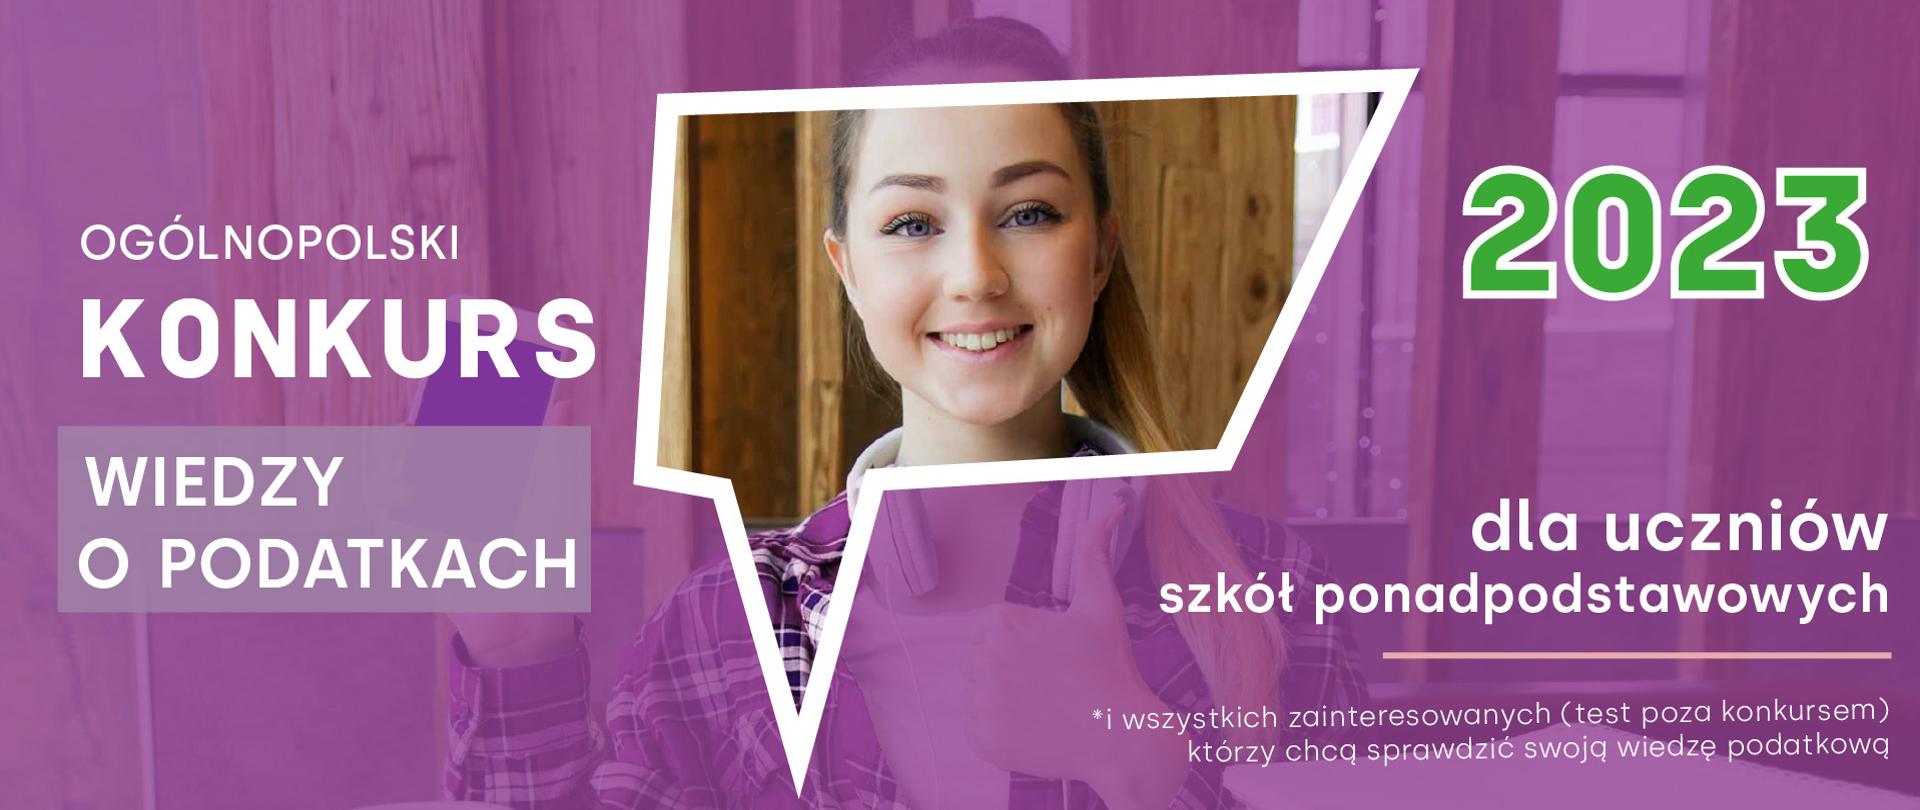 Na fioletowym tle twarz uśmiechniętej dziewczyny, z lewej strony napis Ogólnopolski konkurs wiedzy o podatkach, z prawej 2023 dla uczniów szkół ponadpodstawowych, * i wszystkich zainteresowanych (test poza konkursem) którzy chcą sprawdzić swoją wiedzę podatkową